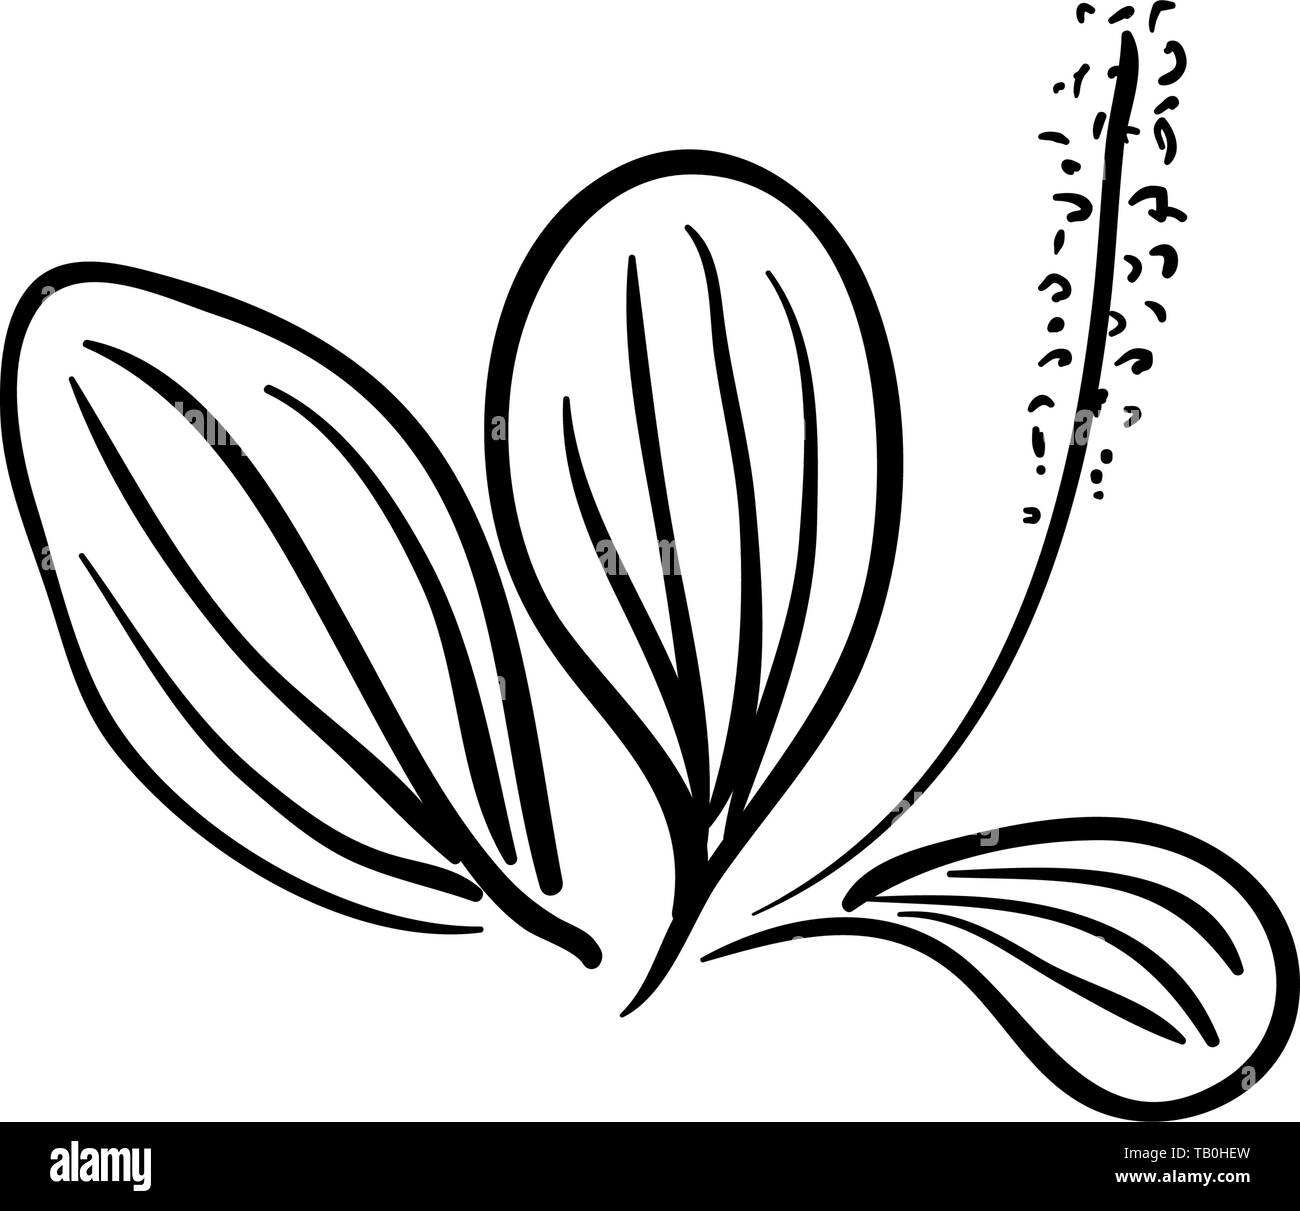 Fleurs de plantain Lancéole Plantago lanceolata, plantain, ribleaf angustifolié herb isolé sur un fond blanc. Plantain lancéole est une médecine naturelle Illustration de Vecteur